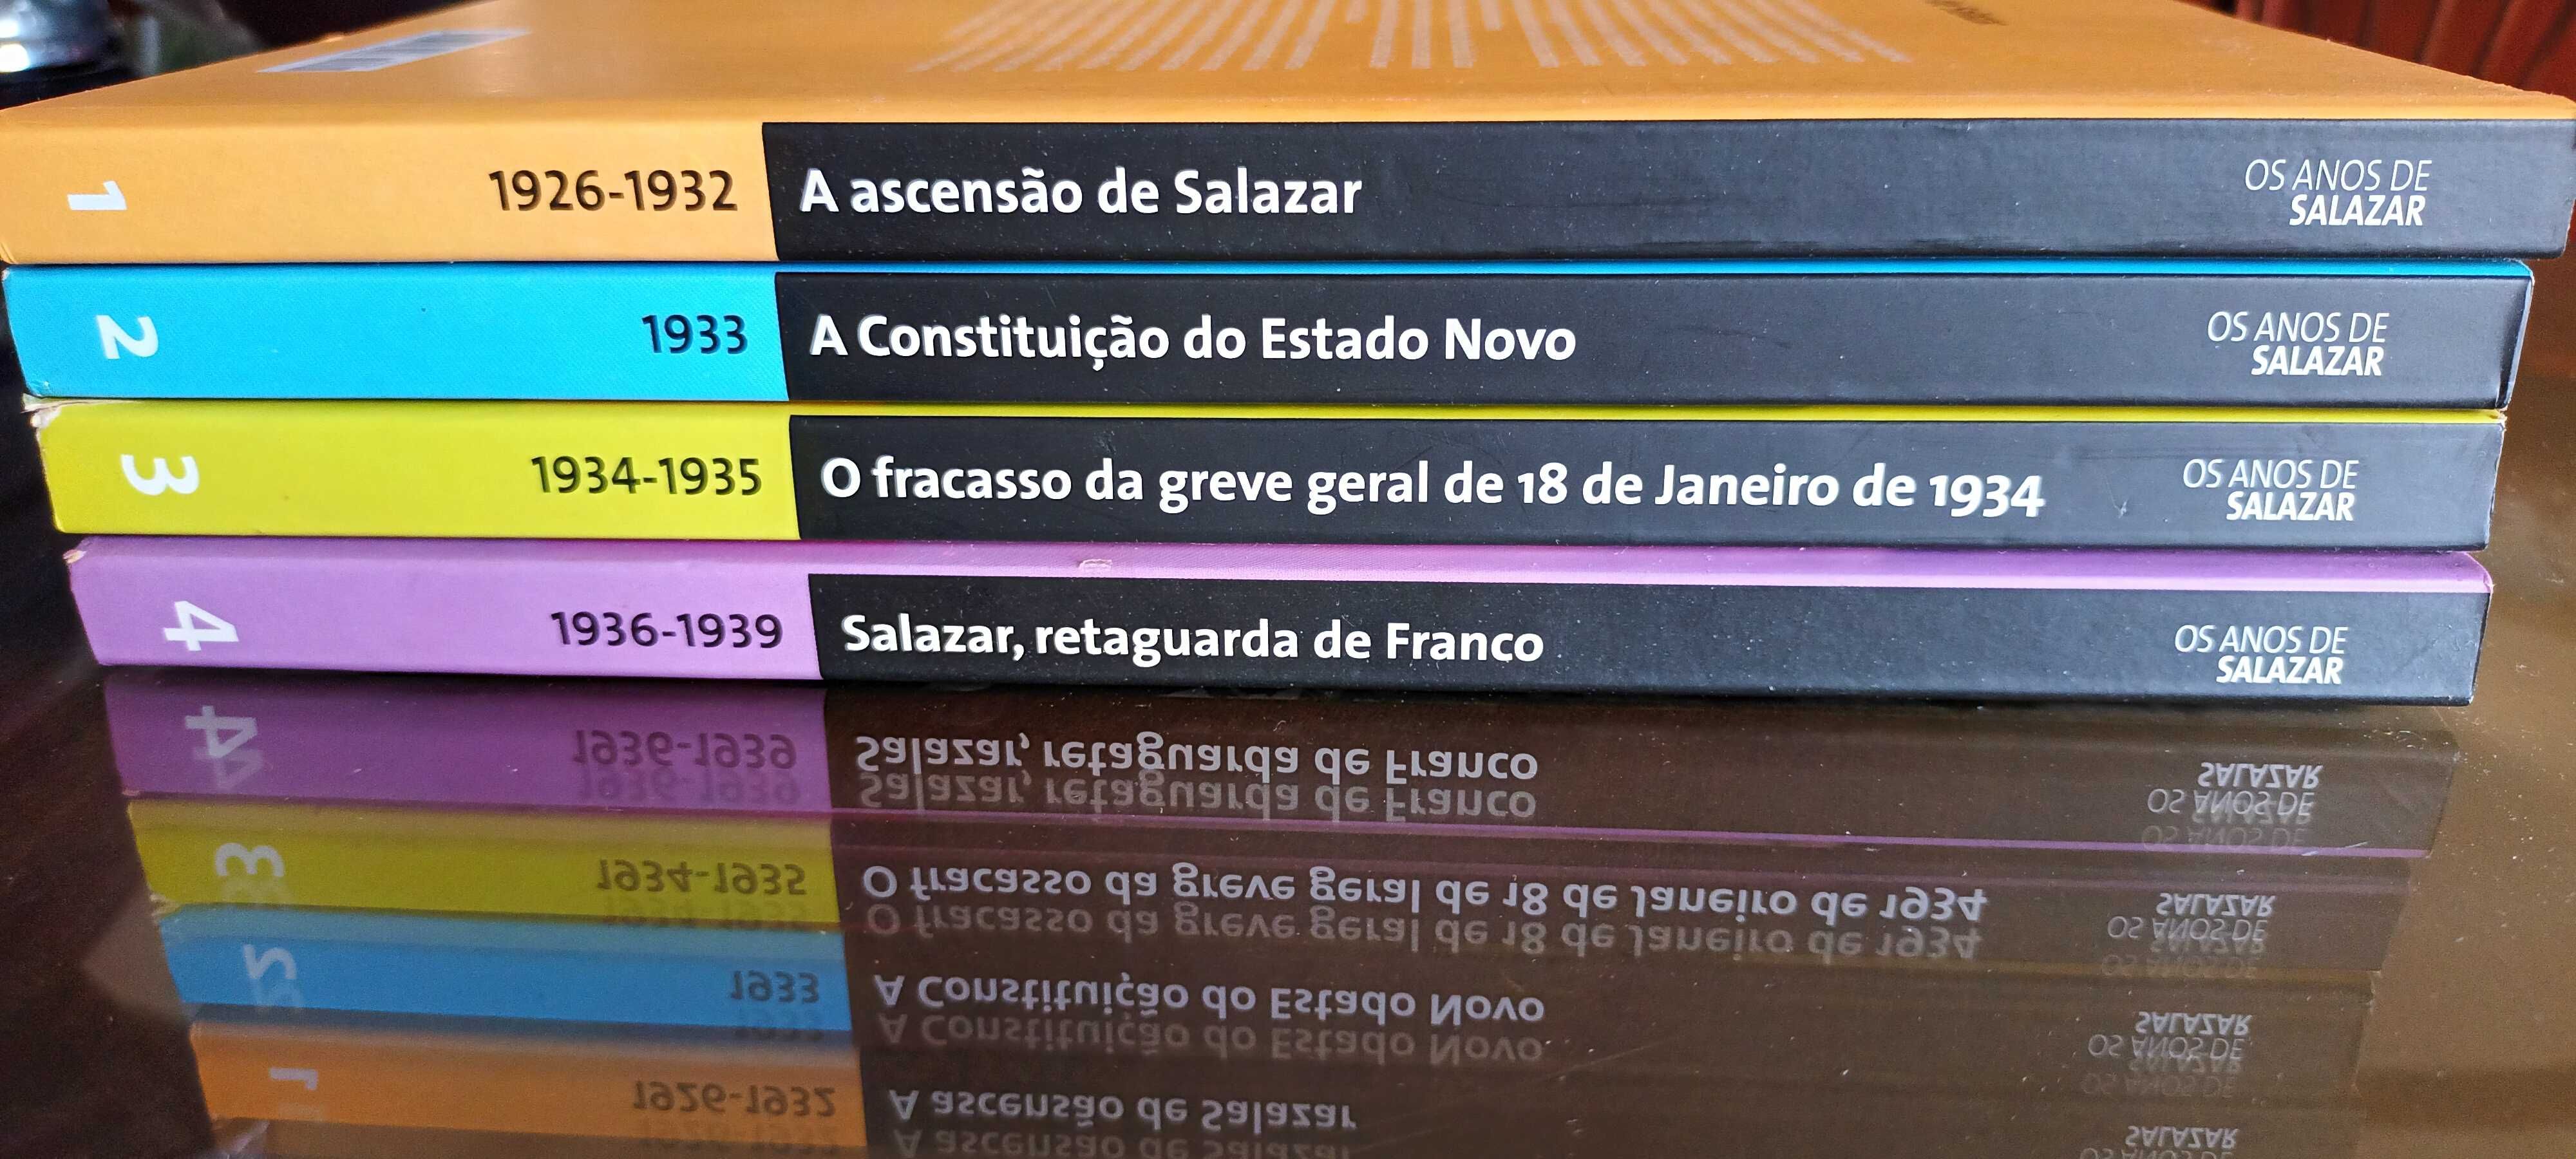 Coleção de 4 volumes, Os anos de Salazar